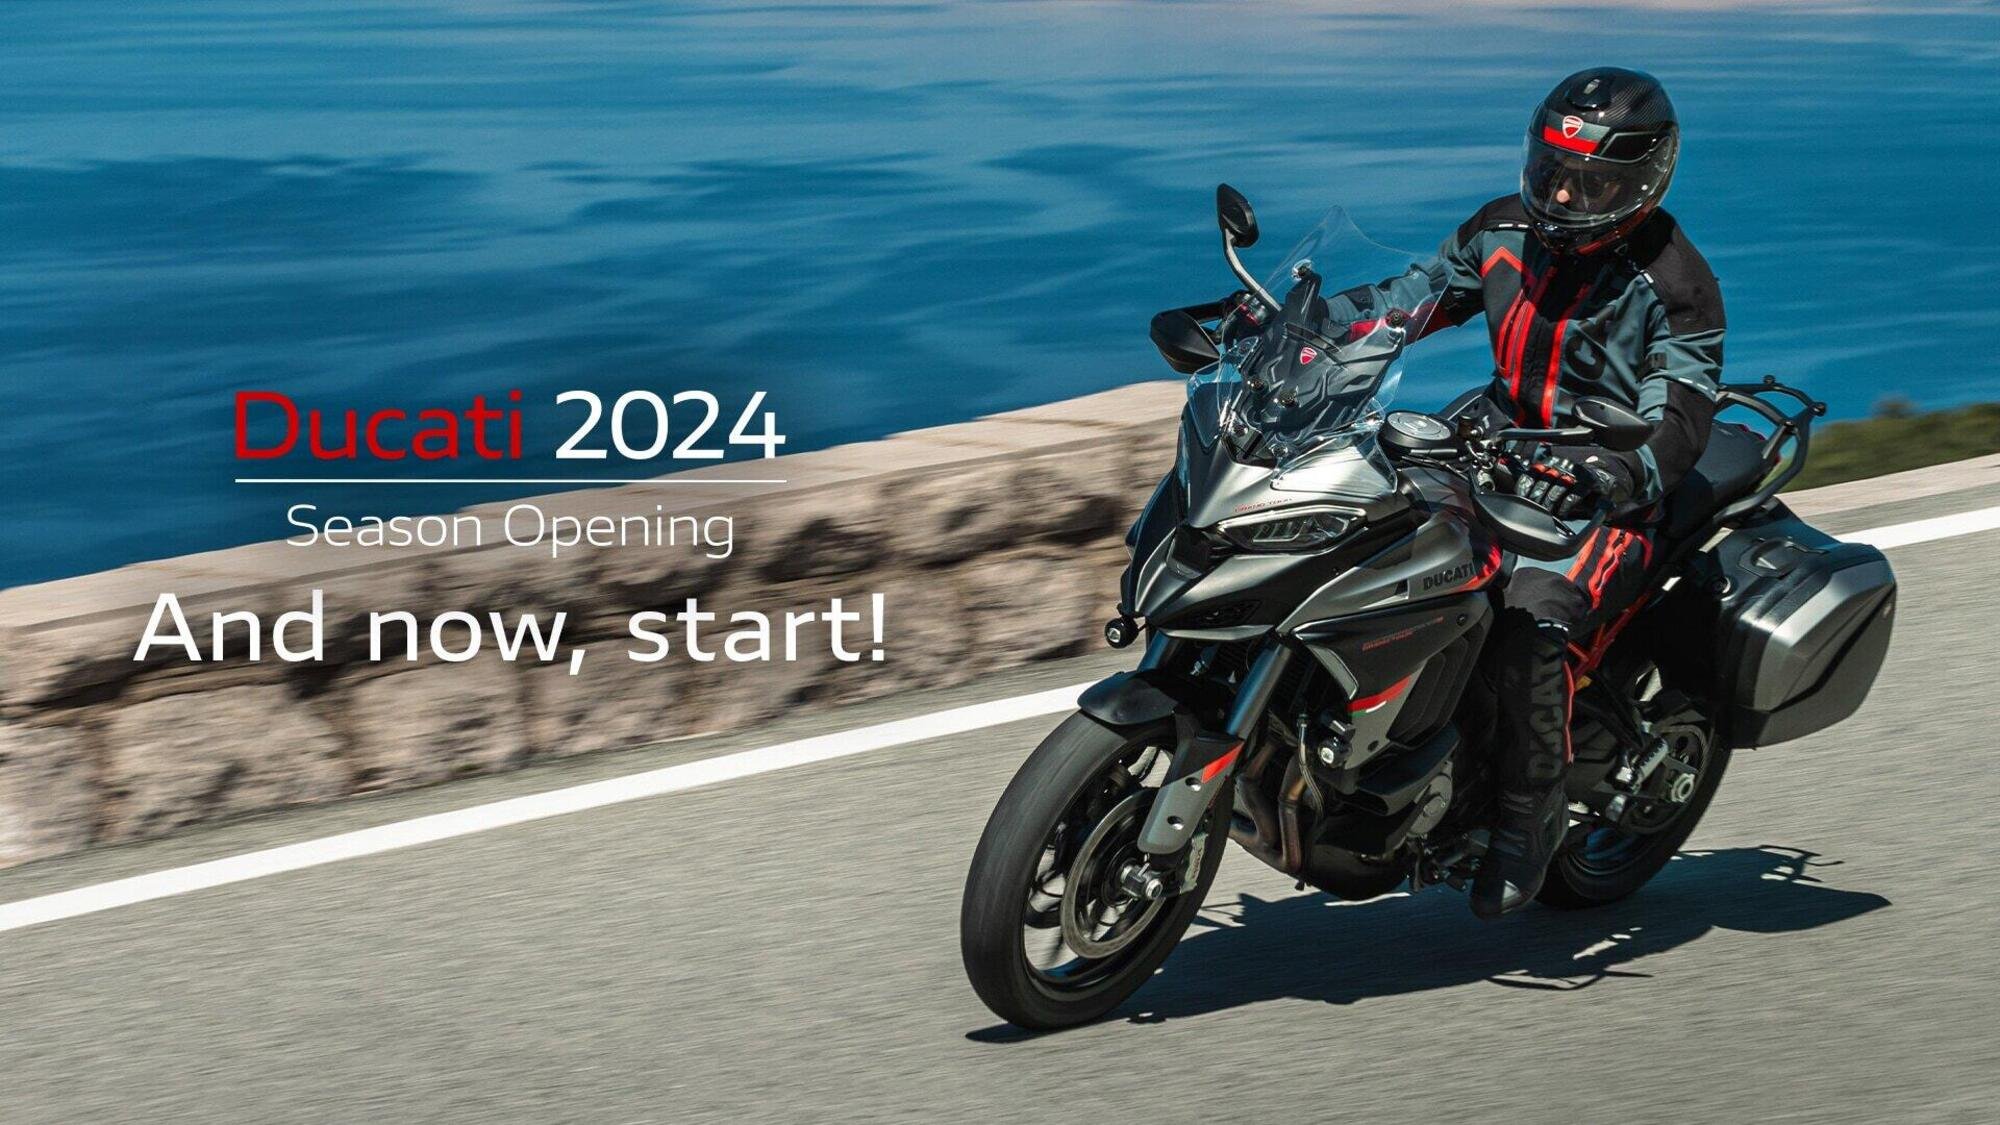 Season Opening: Ducati presenta al pubblico la sua gamma 2024